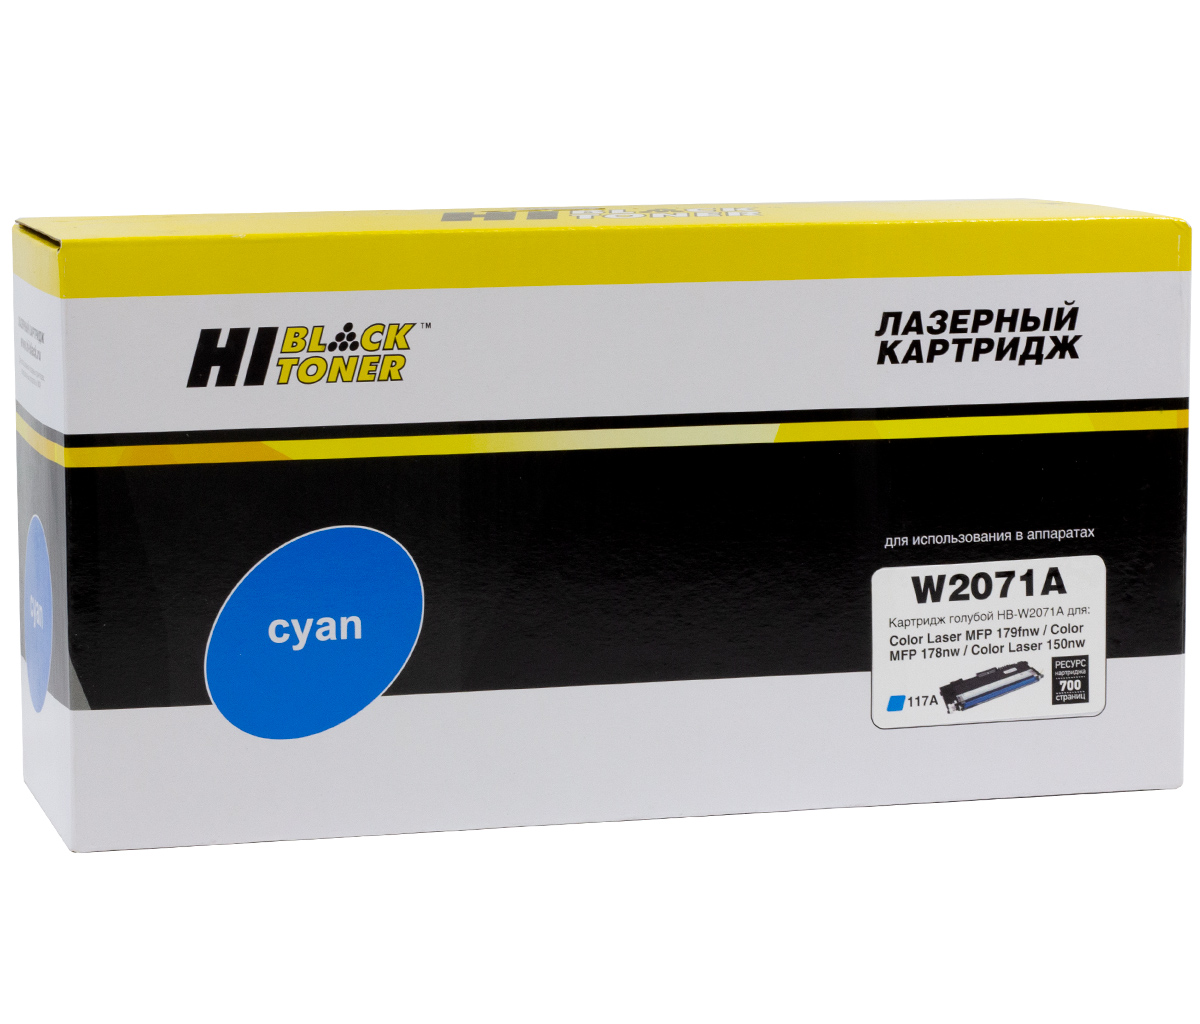 Тонер-картридж Hi-Black (HB-W2071A) для HP CL150a/150nw/MFP178nw/179fnw, 117A, C, 0,7K б/ч